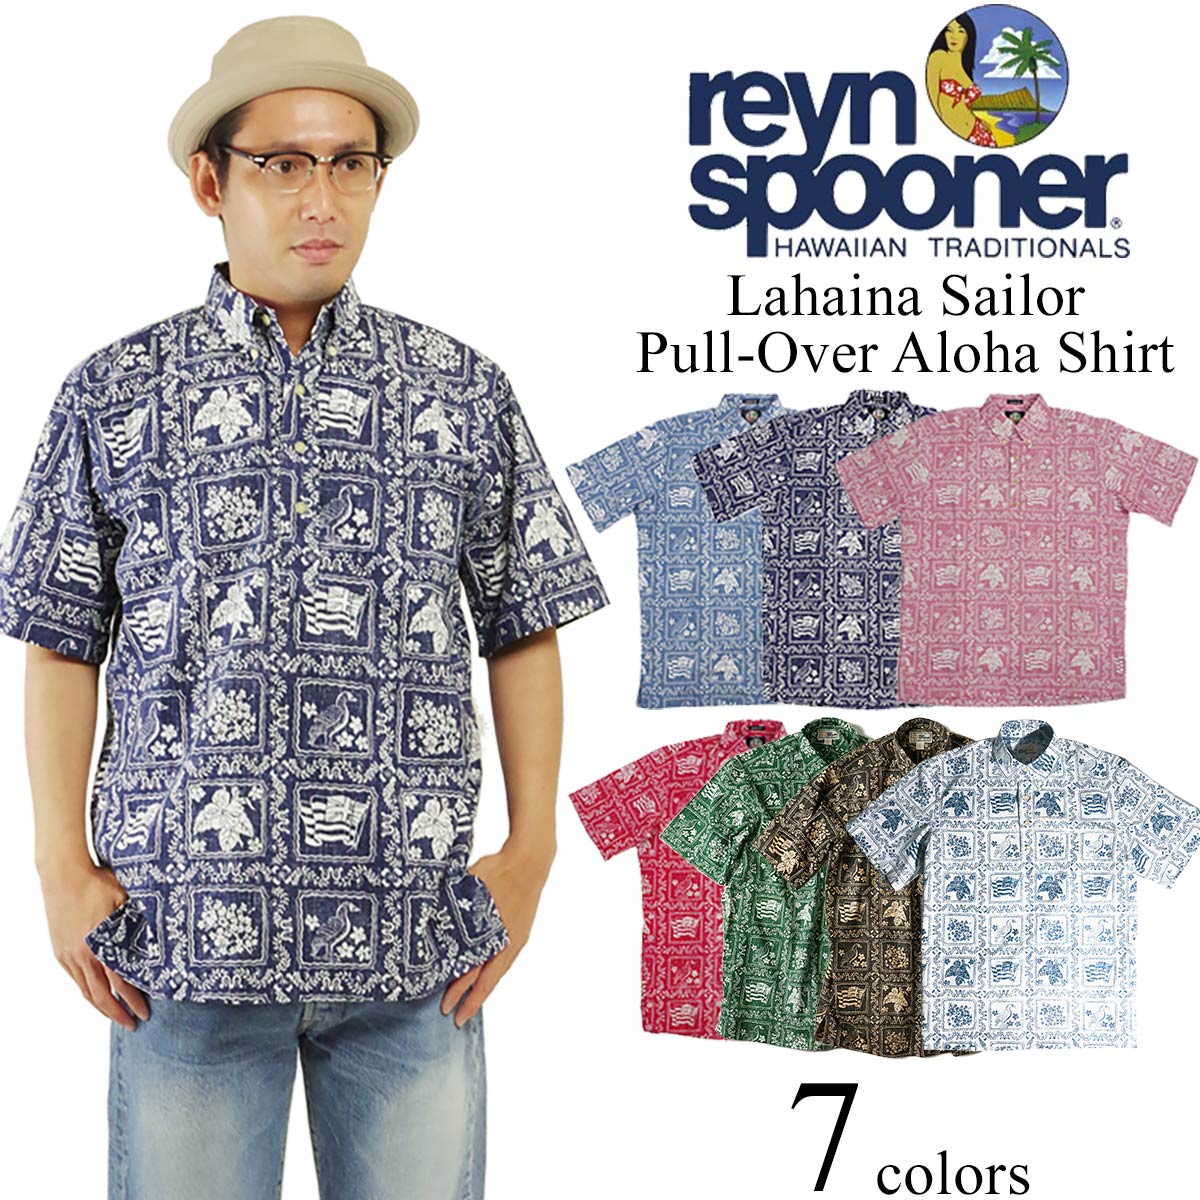 　ワイキキのアラ・モアナ・センターで、“太平洋のブルックス・ブラザーズ”と言われた洋品店『Reyn's』が、ワイキキビーチにて最高のサーフトランクスを作っていた『Spooners』に、スウィムウエアやシャツを作らせていたことから発展し1962年に合併、『ReynSpooner』が誕生しました。その後、仕立ての良いシャツ作りと、裏生地使いのアロハシャツなど斬新なアイデアで、世界で愛されるブランドへと成長したのです。40年以上の伝統を誇る豊富なレパートリー、ハワイで作られた本物のアロハシャツをぜひご覧下さい。REYN SPOONERの全商品を見る■商品説明　スプーナーの定番アロハをご紹介。プルオーバーのボタンダウンカラーで、素材はピマコットンとポリエステルの平織り生地（通称スプーナークロス）を採用。裏使いならではの素朴な色味が絶妙で、ポケットもしっかり柄合わせされています。　こちらはスプーナーのアイコンとも言える「ラハイナセイラー」。ハワイの州旗、州花、州鳥、州木が格子状に配され、常に高い人気を誇る定番柄です。■商品スペック素材コットン 55％ ポリエステル 45％カラーデニムネイビーピンクレッドグリーンブラックオニキスホワイト生産国韓国、中国その他仕様、注意点等※サイズに若干個体差があります。下記サイズ表は1〜2cmの誤差を含みますので、予めご了承下さい。■各部実寸平均値（サイズはUSA表記となります）サイズ肩幅身幅着丈S47cm58cm74cmM49cm62cm76cmL51cm65cm78cmXL54cm68cm79cmXXL55cm71cm83cmXXXL58cm74cm89cmサイズの測り方■モデル着用他アイテムクリックすると別ウインドウで開きます【海外発送用重量目安：300g】海外発送送詳細はこちら【関連キーワード】ギフトラッピング対応商品/ギフトラッピング/ギフト/ラッピング/プレゼント/贈り物/お祝い/お返し/新生活/誕生日/入学/入社/大人/メンズ/男性/紳士/クリスマス/成人の日/父の日/敬老の日/